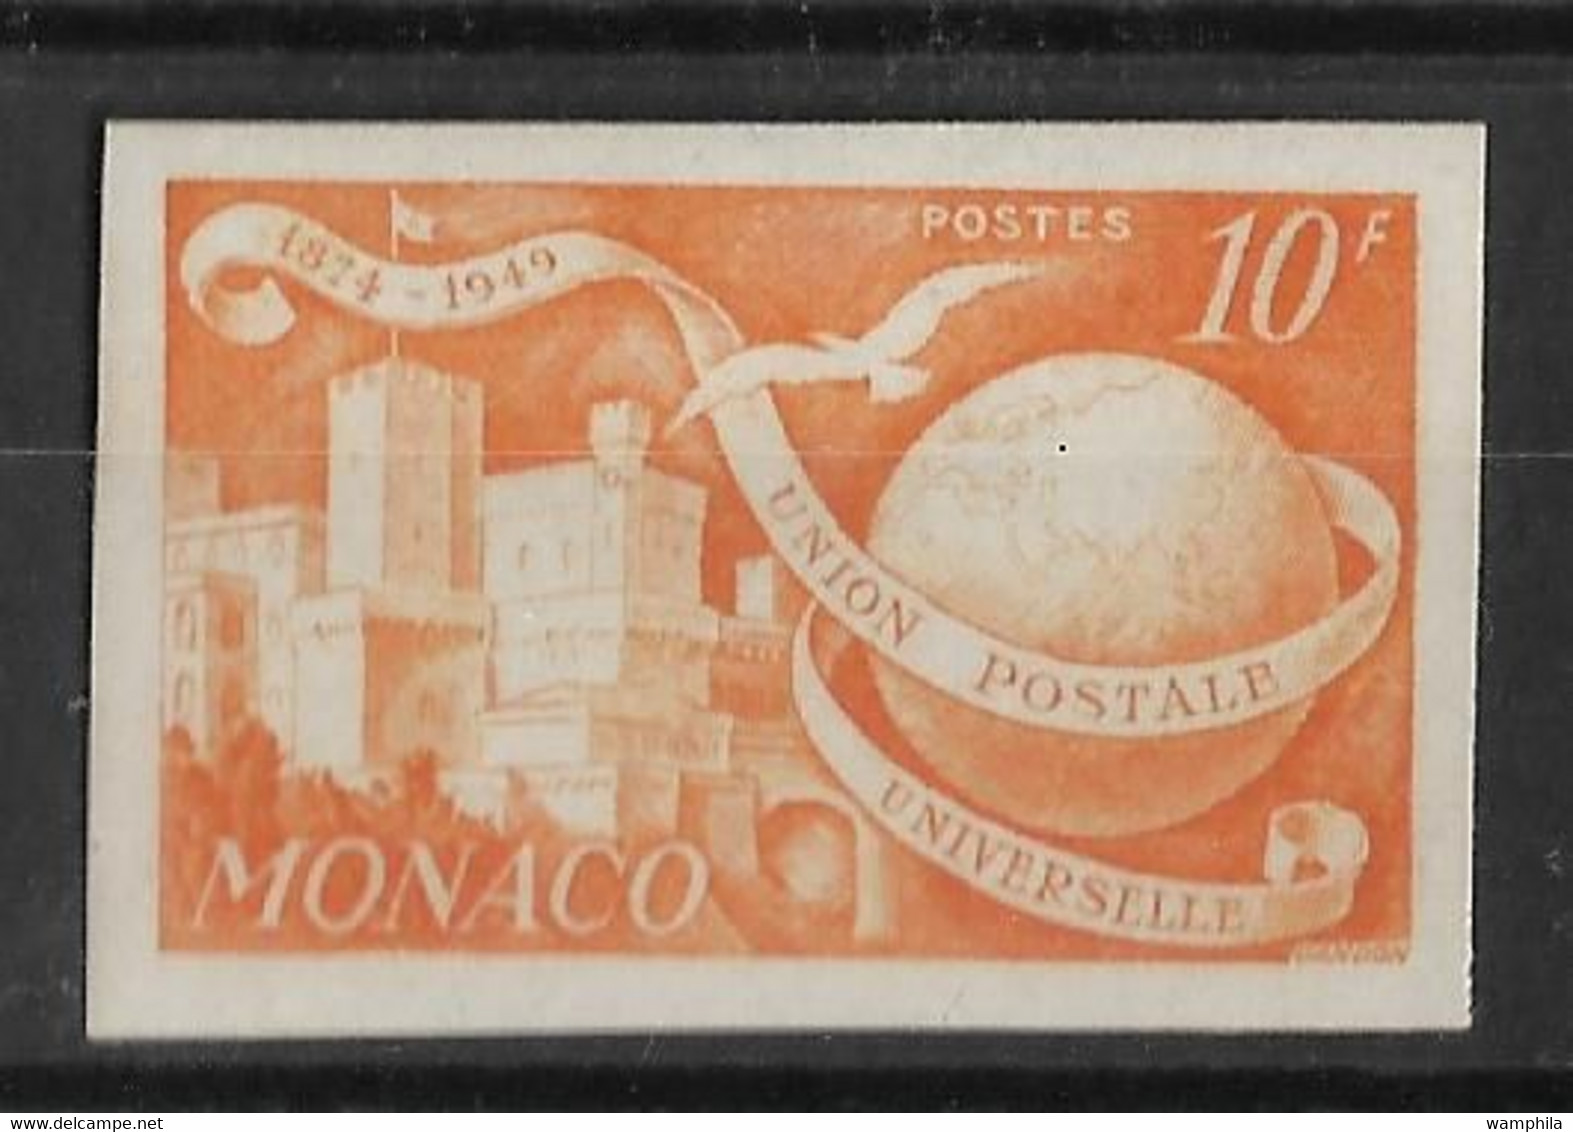 Monaco N°332A* Non Dentelés. Anniversaire De L'U.P.U. - Variétés